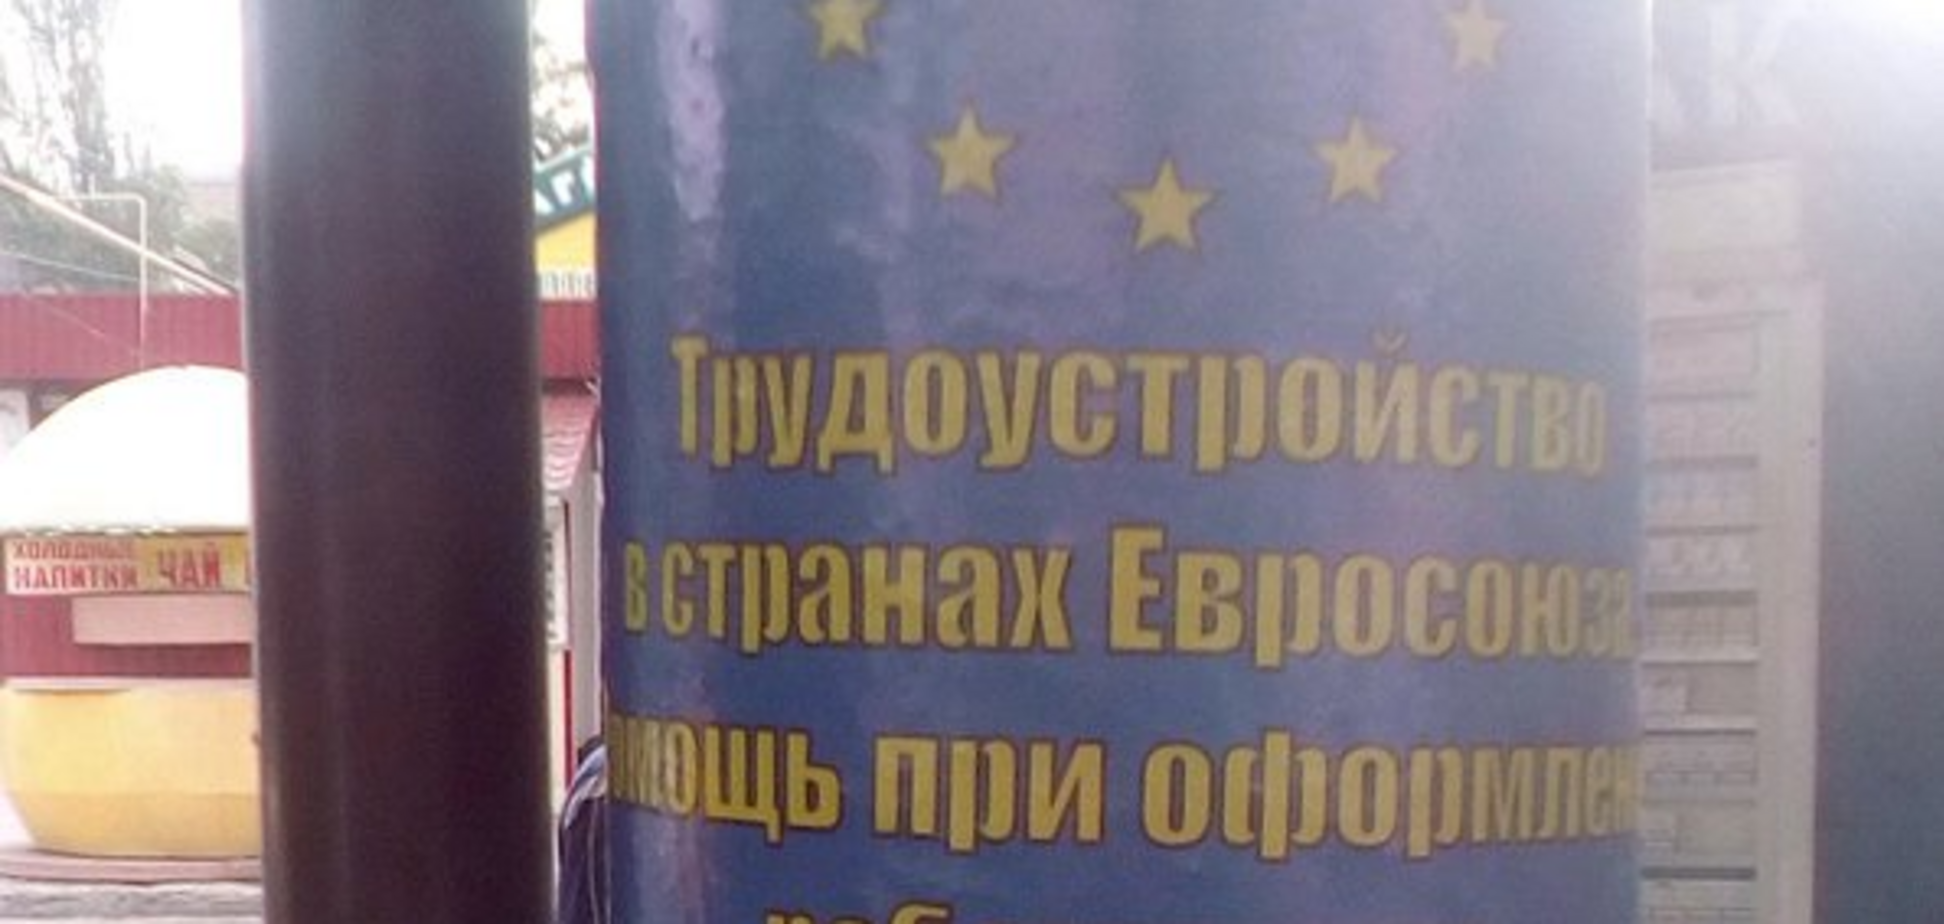 'ДНР' бере курс на Європу: знакове фото з Донецька насмішило мережу